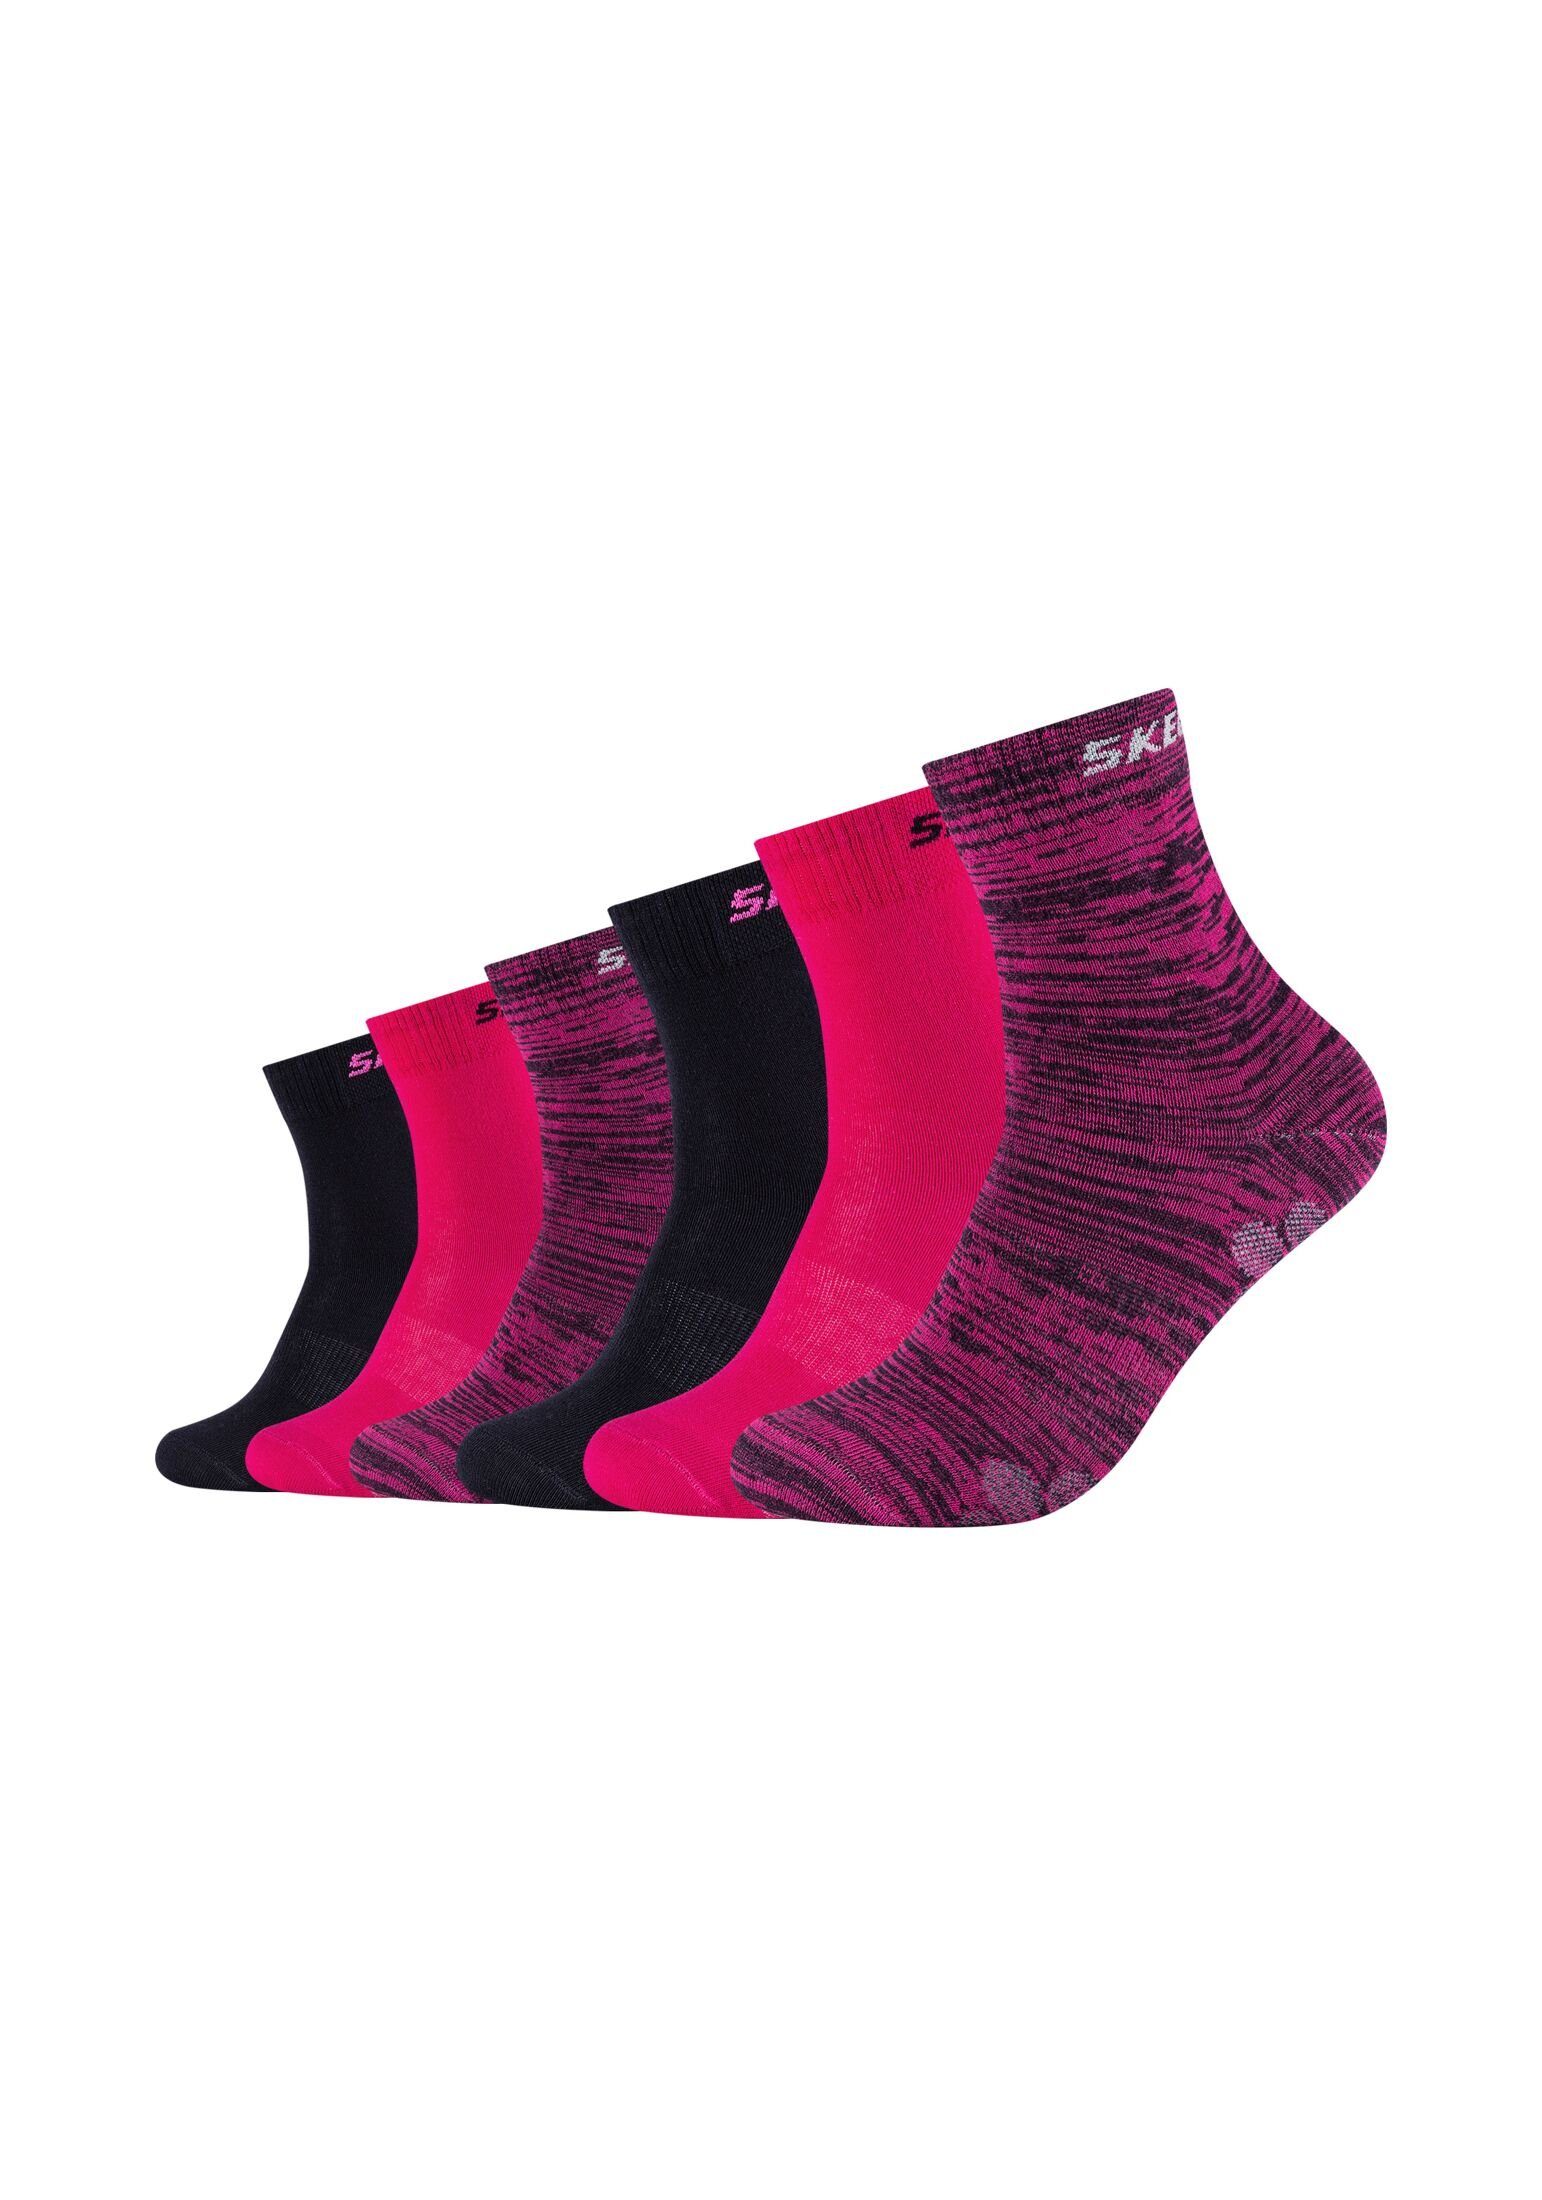 Skechers Socken Socken 6er mouliné pink glow Pack